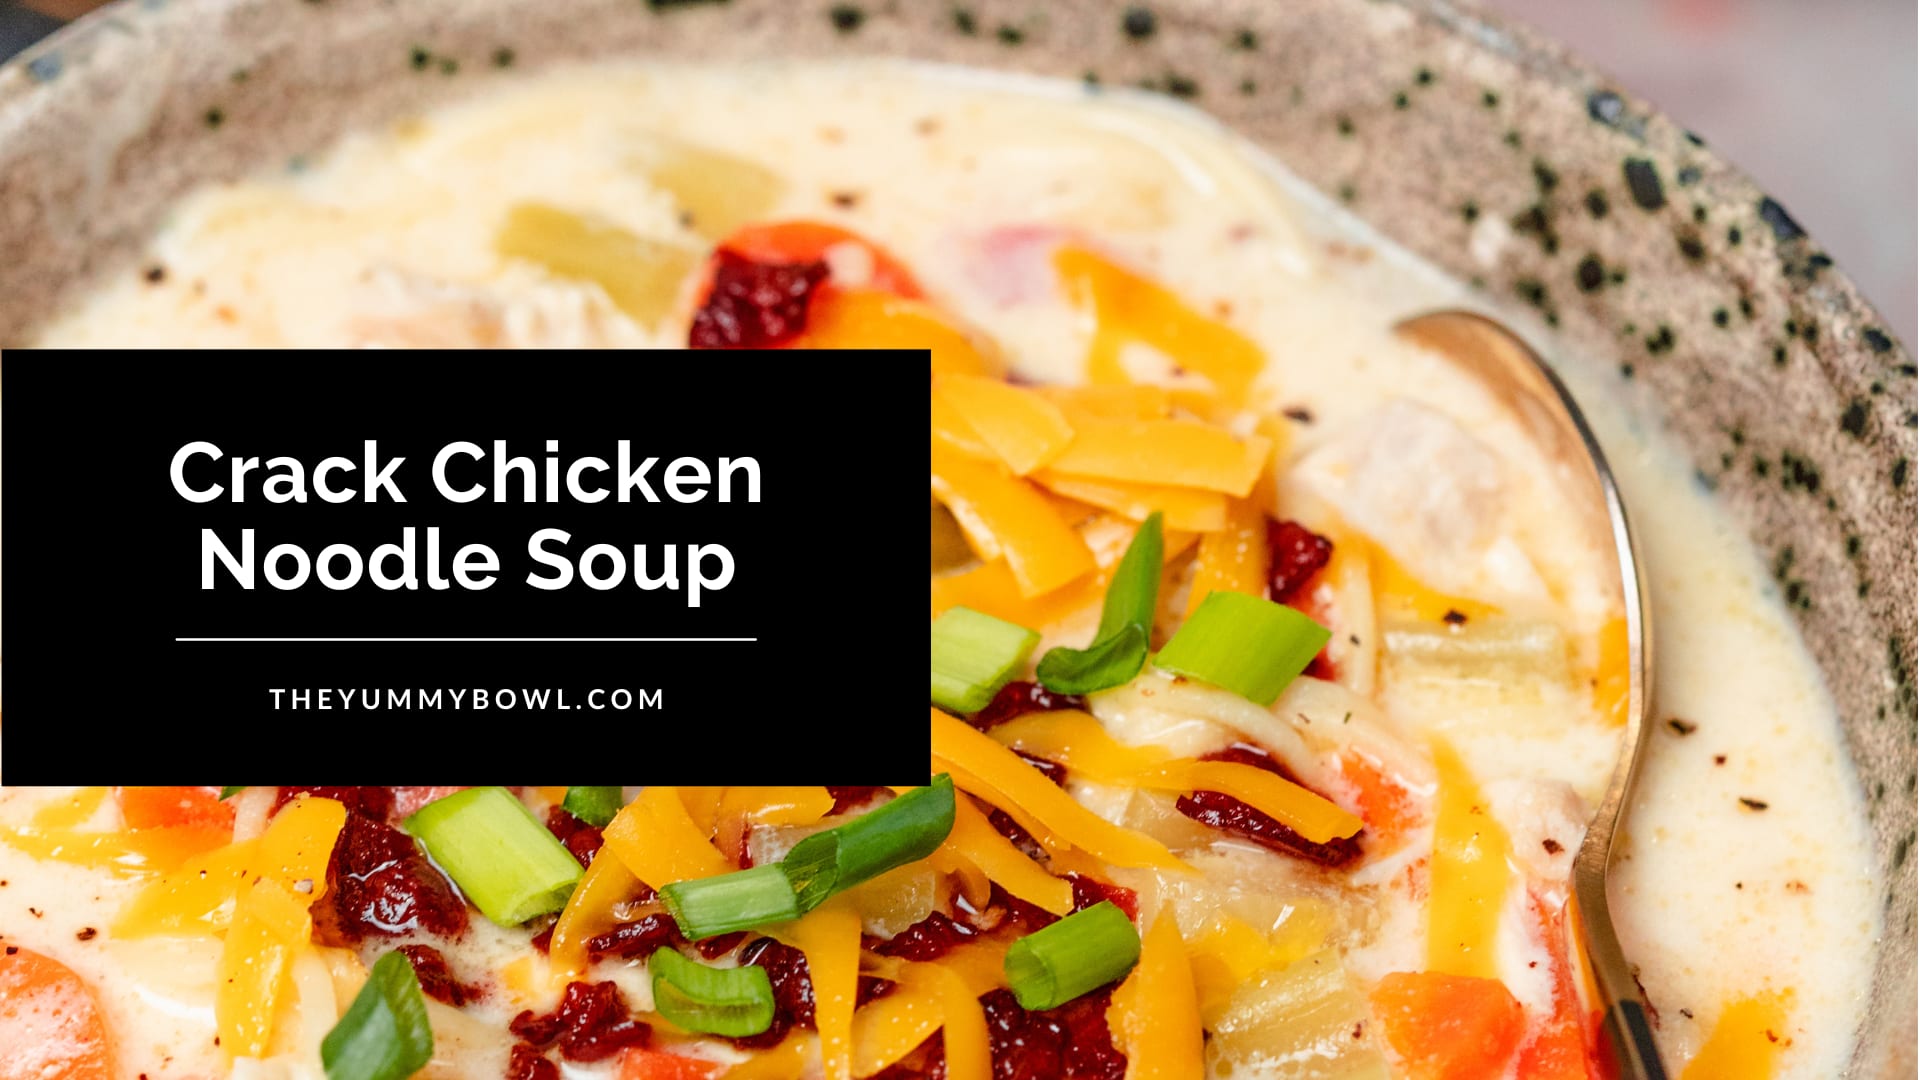 Crack Chicken Noodle Soup - Plain Chicken